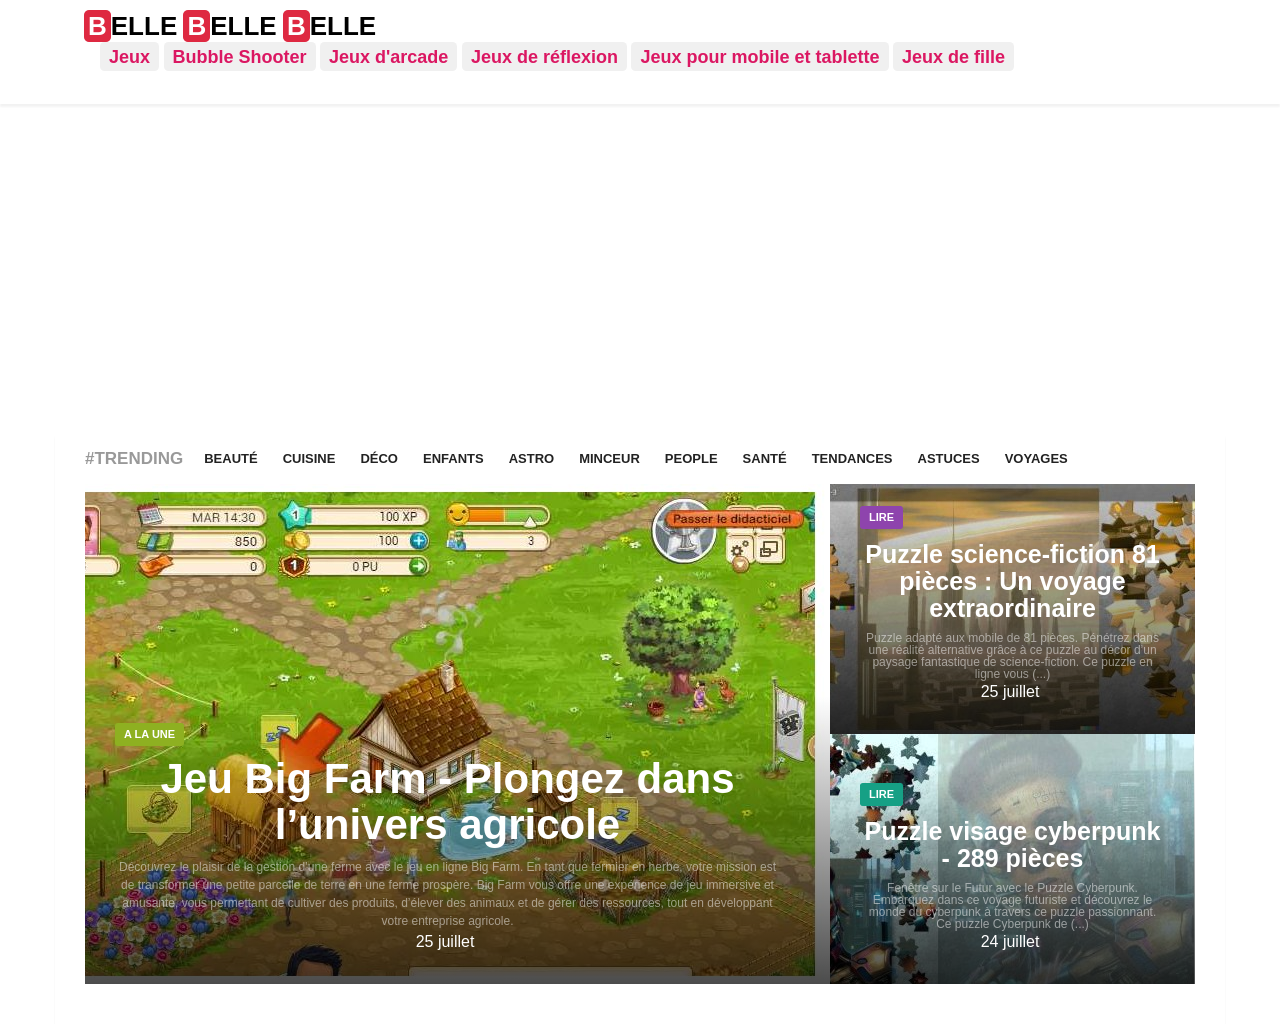 www.belle-belle-belle.com